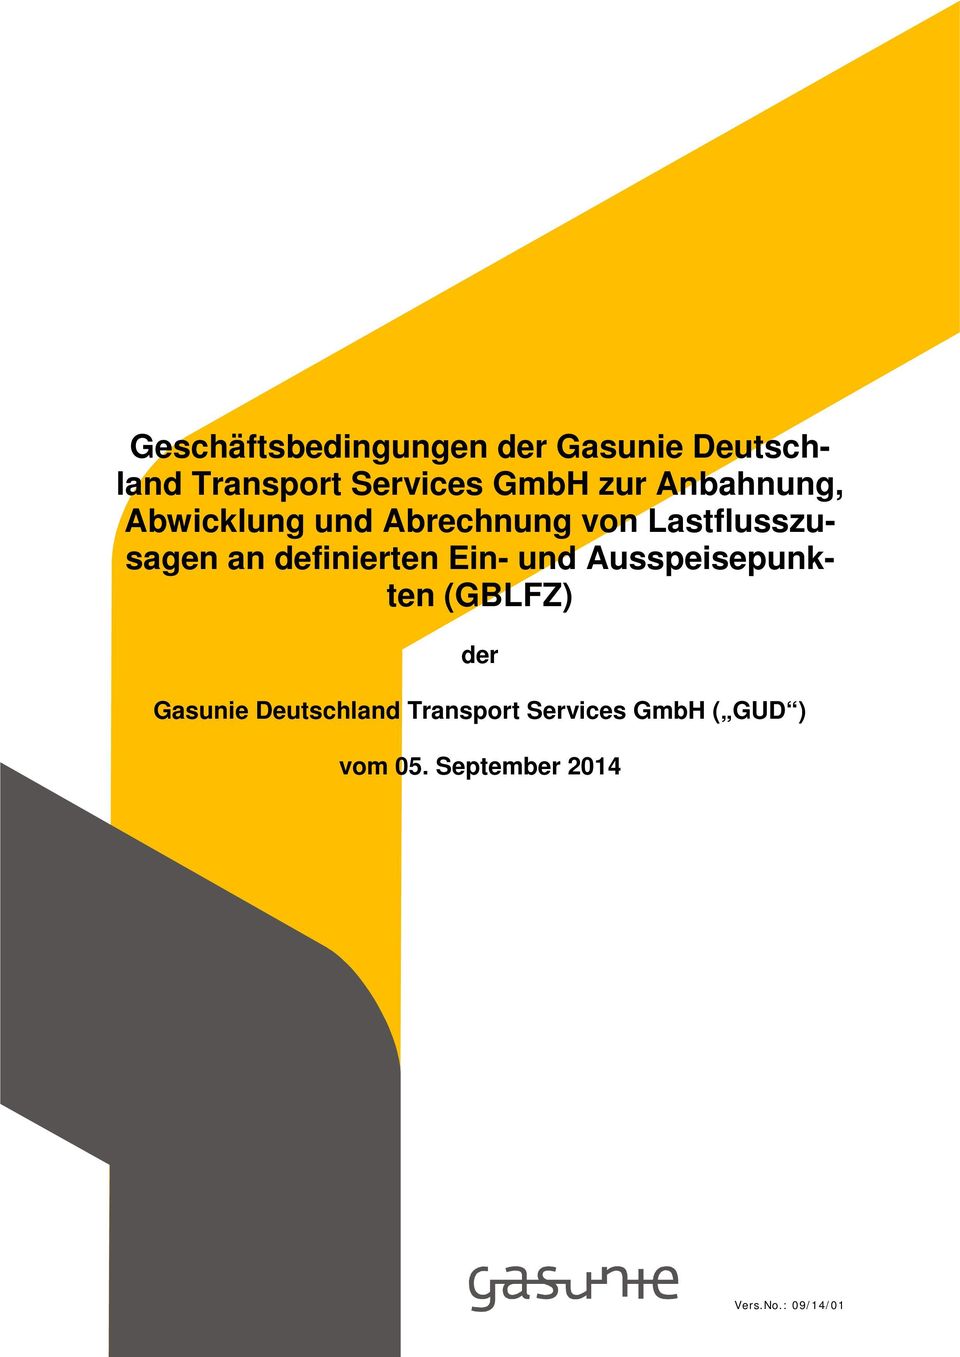 definierten Ein- und Ausspeisepunkten (GBLFZ) der Gasunie Deutschland